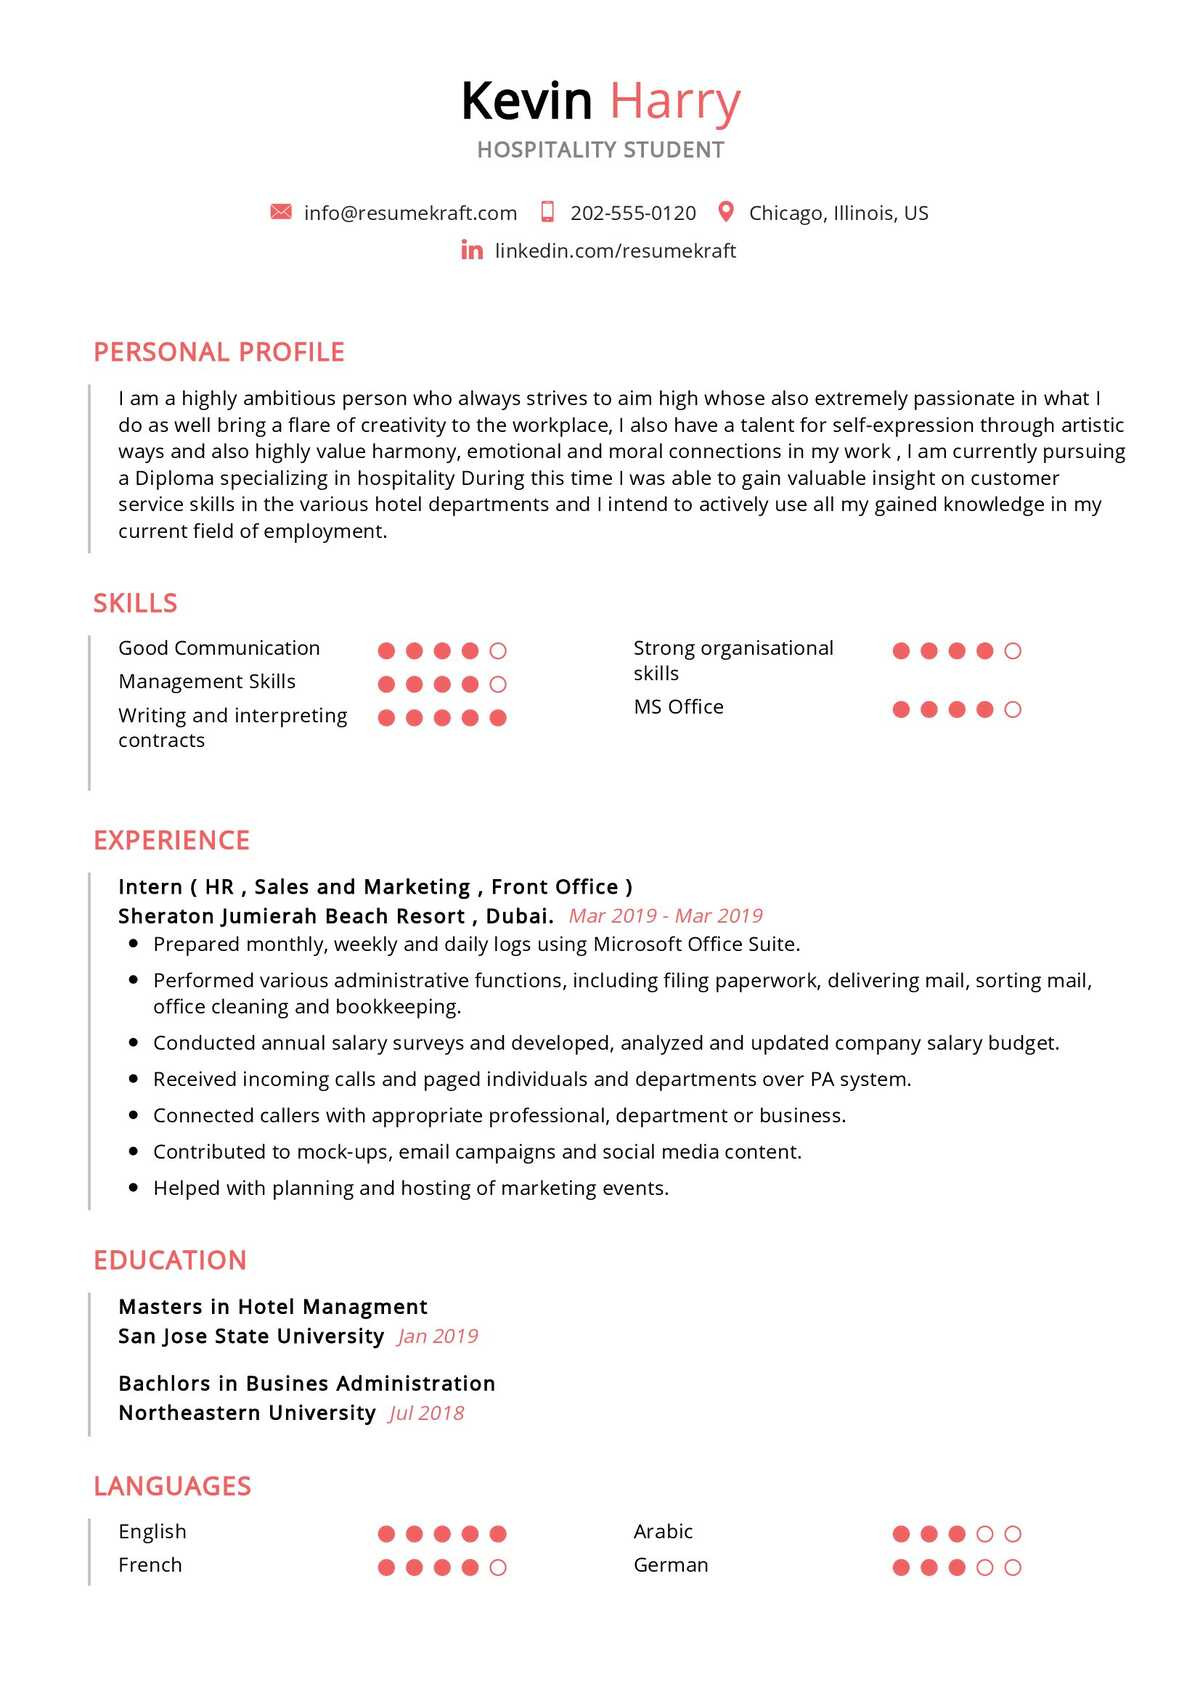 Sample Resume Of Hr Manager In Dubai Hospitality Student Resume Sample 2022 Writing Tips – Resumekraft